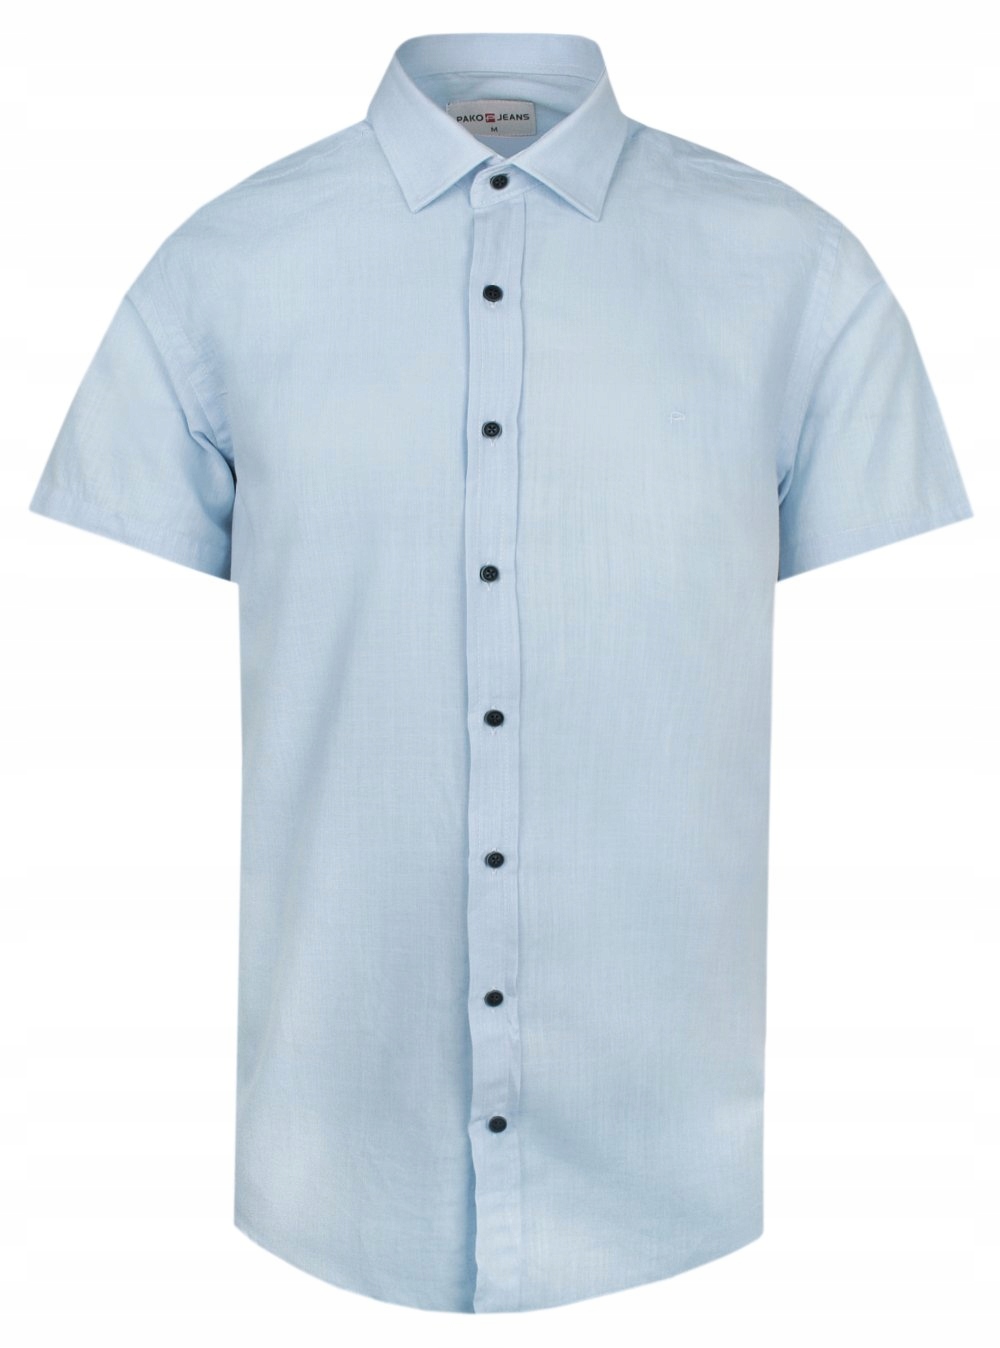 Letná, víkendová bavlnená košeľa - Pako Jeans - Modrá - M